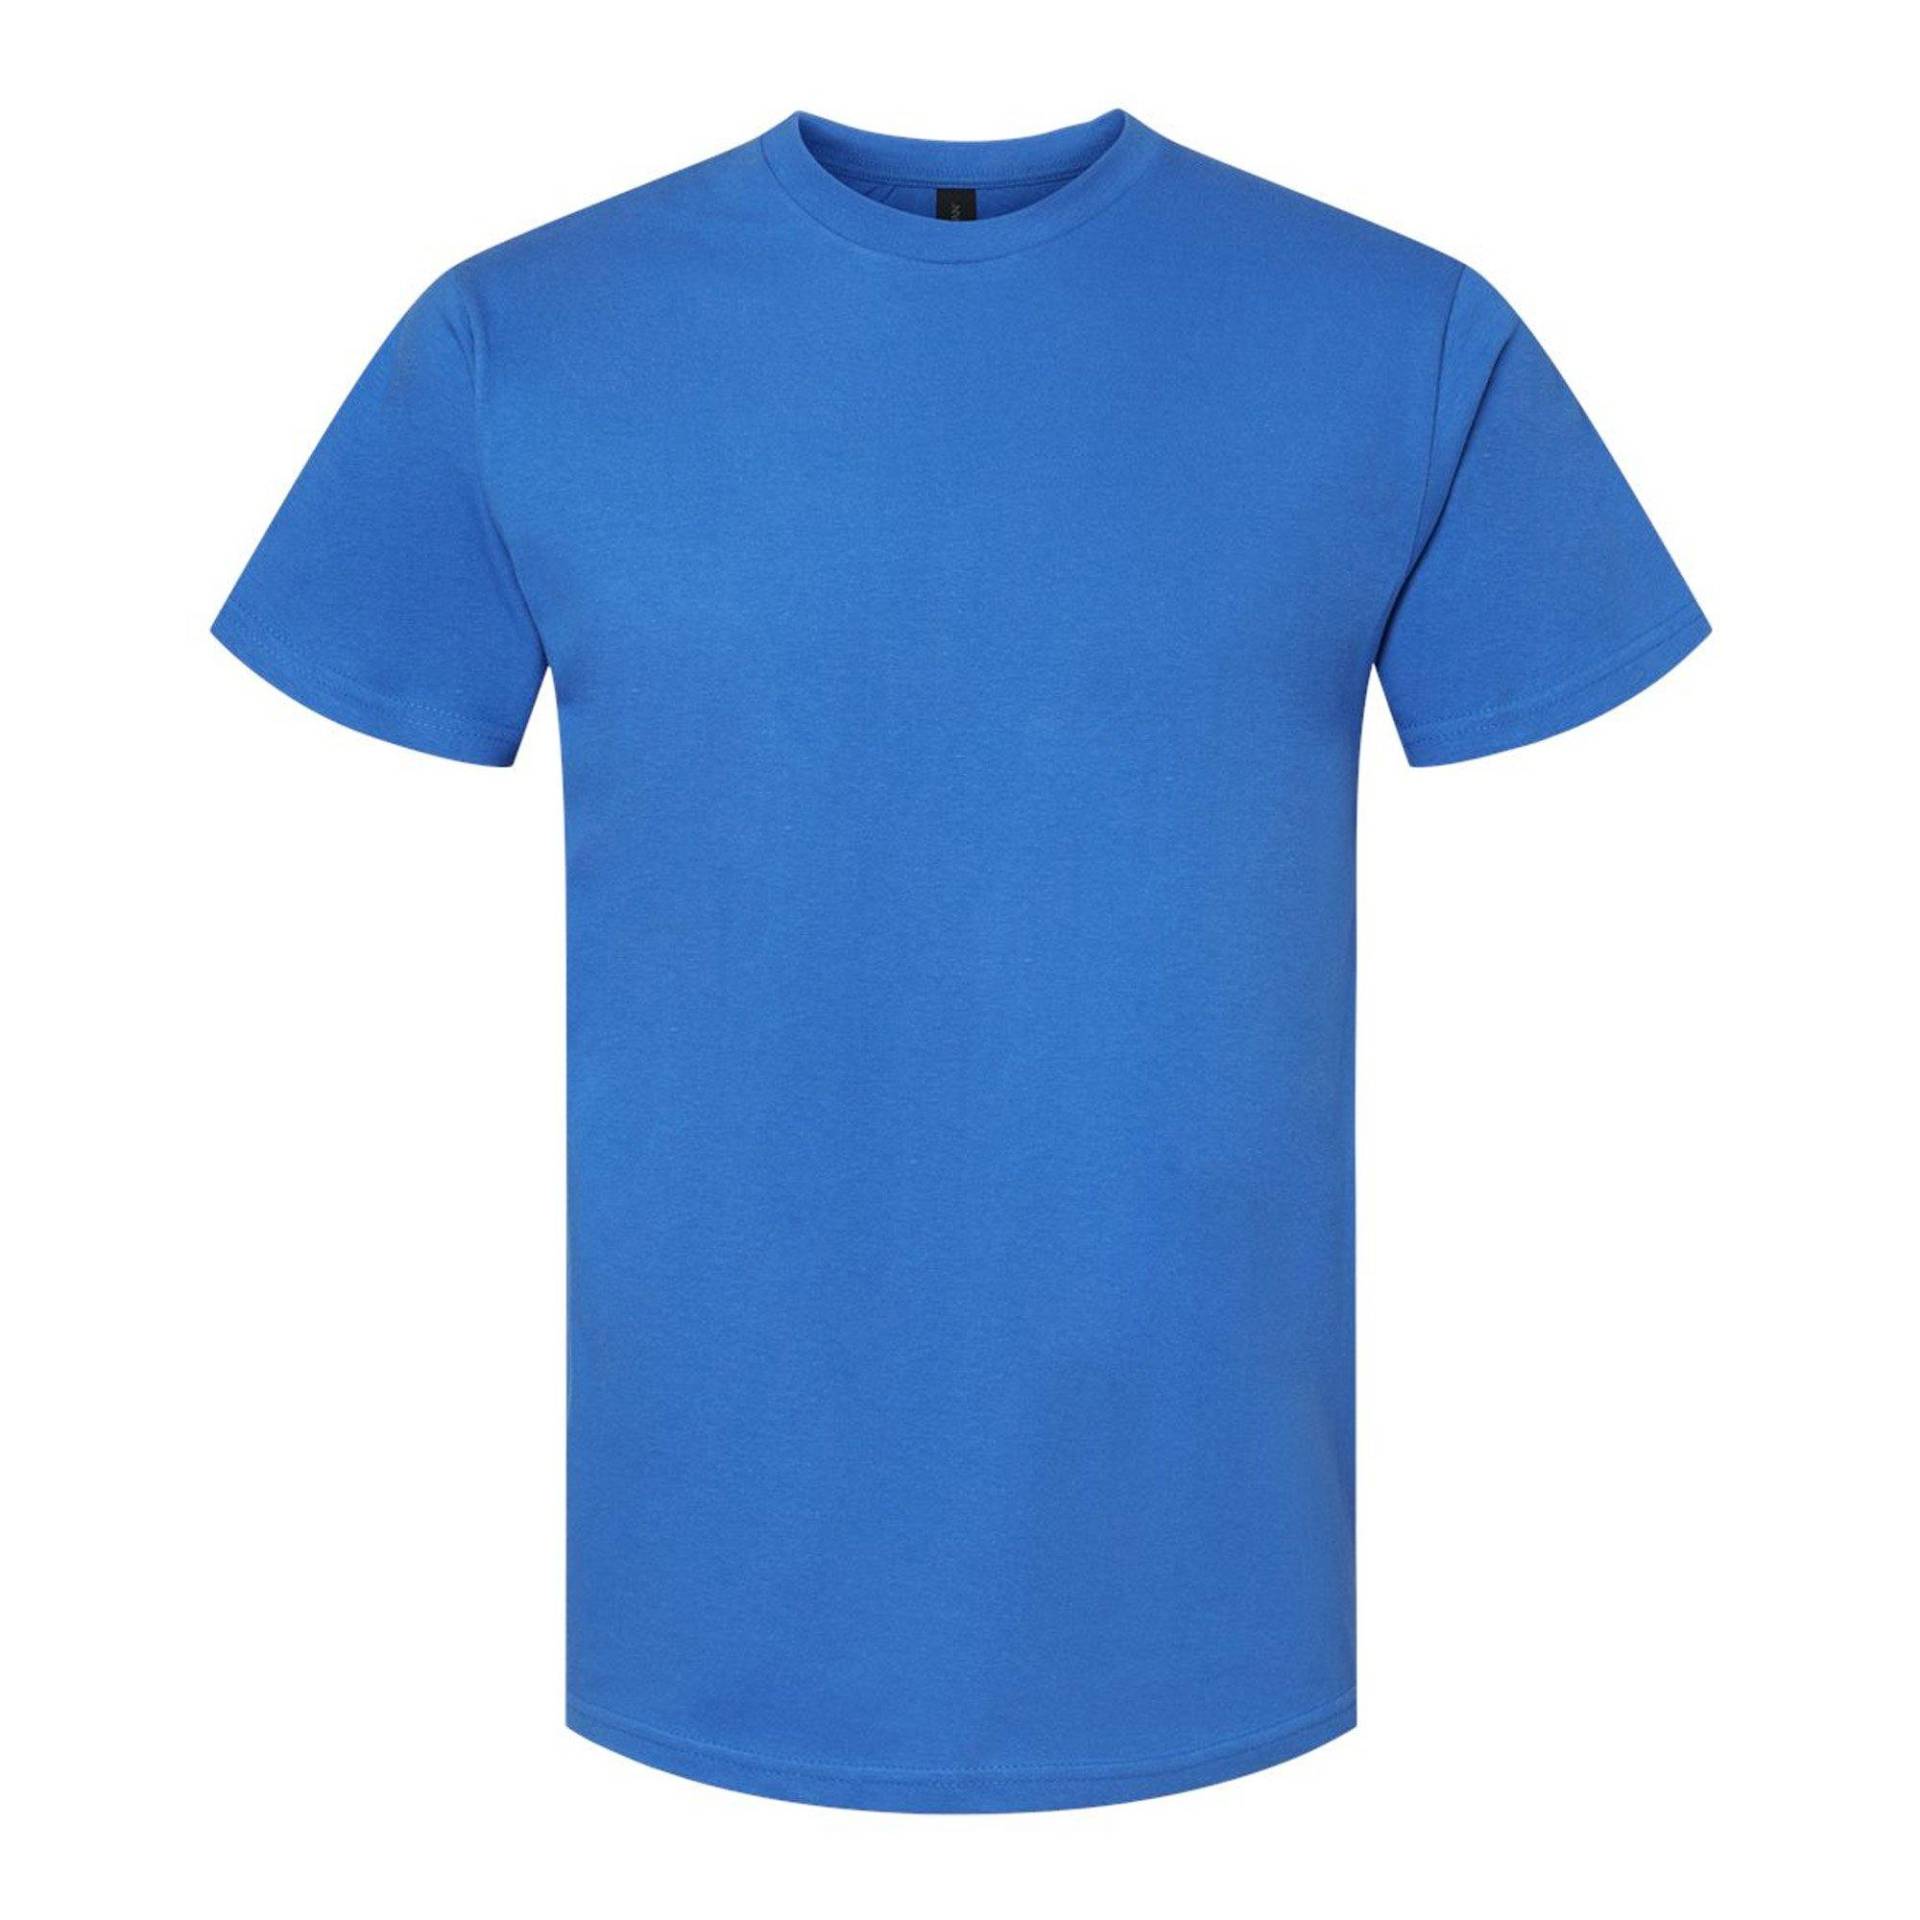 Softstyle Tshirt Damen Königsblau XL von Gildan